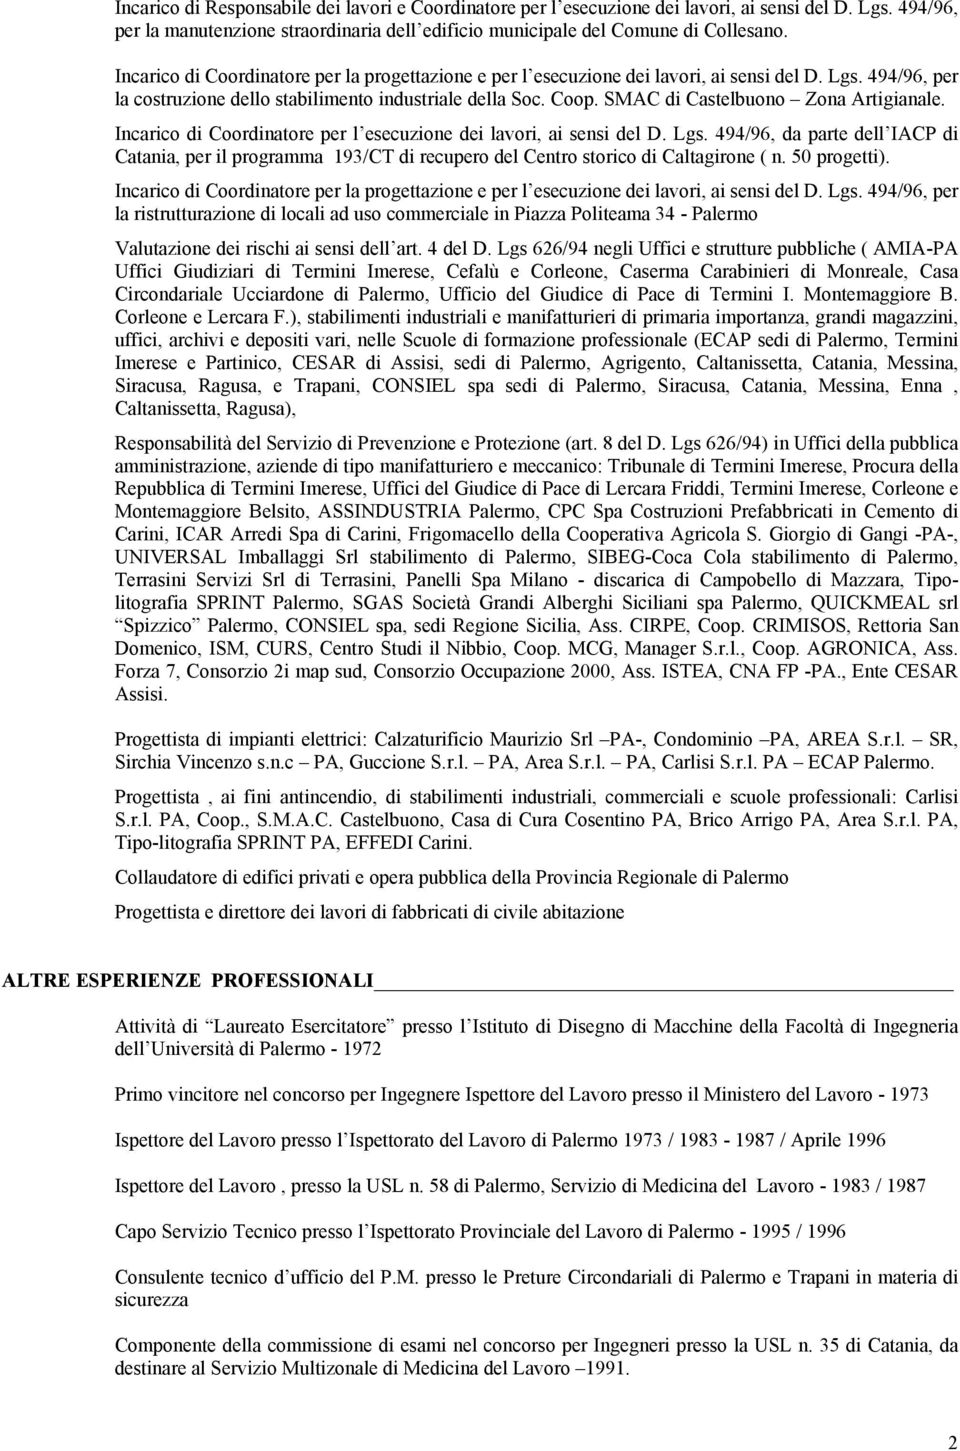 494/96, da parte dell IACP di Catania, per il programma 193/CT di recupero del Centro storico di Caltagirone ( n. 50 progetti).